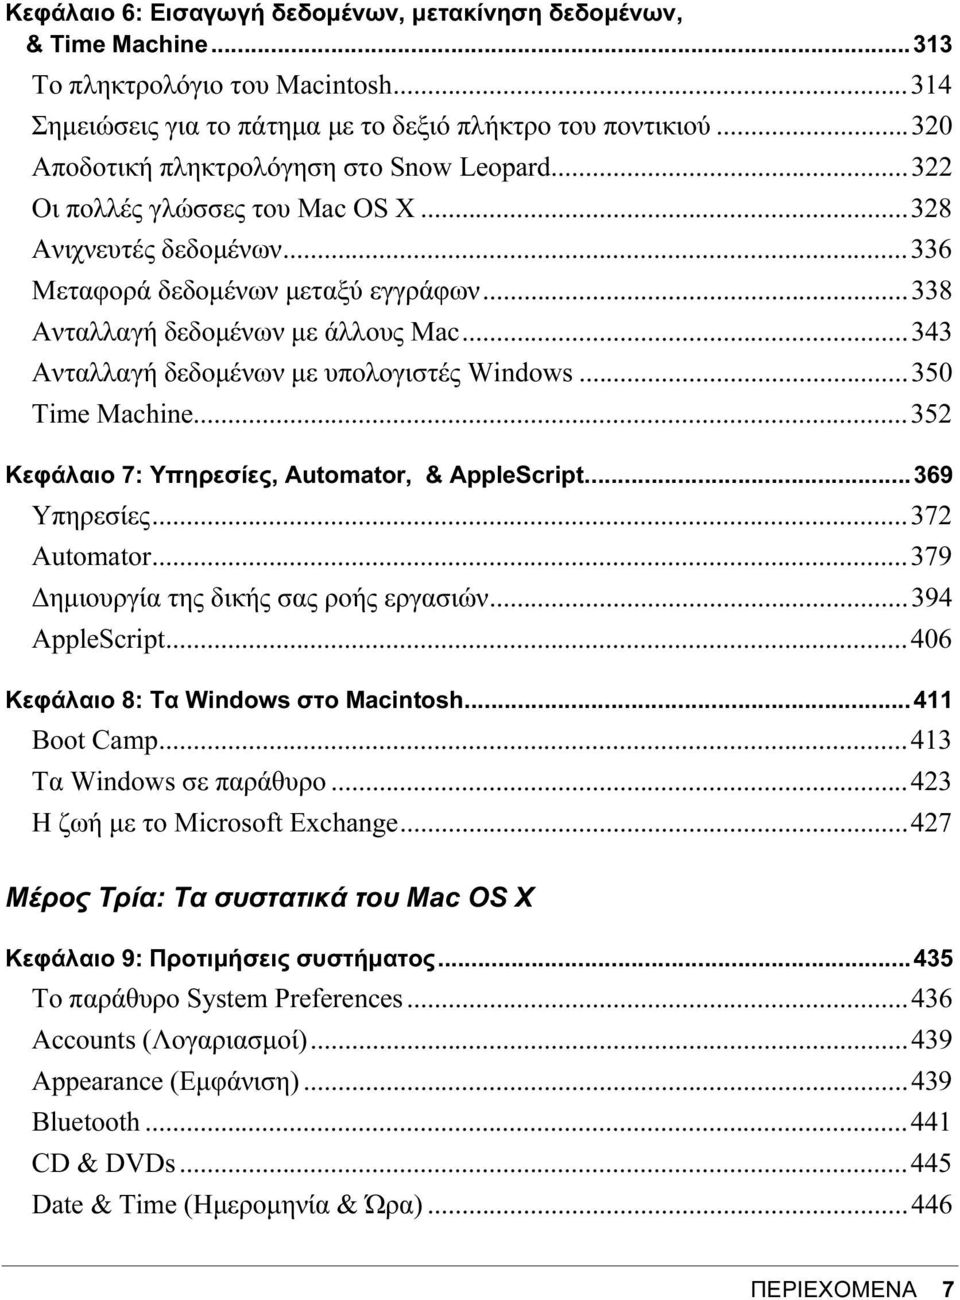 ..343 Ανταλλαγή δεδομένων με υπολογιστές Windows...350 Time Machine...352 Κεφάλαιο 7: Υπηρεσίες, Automator, & AppleScript...369 Υπηρεσίες...372 Automator...379 Δημιουργία της δικής σας ροής εργασιών.